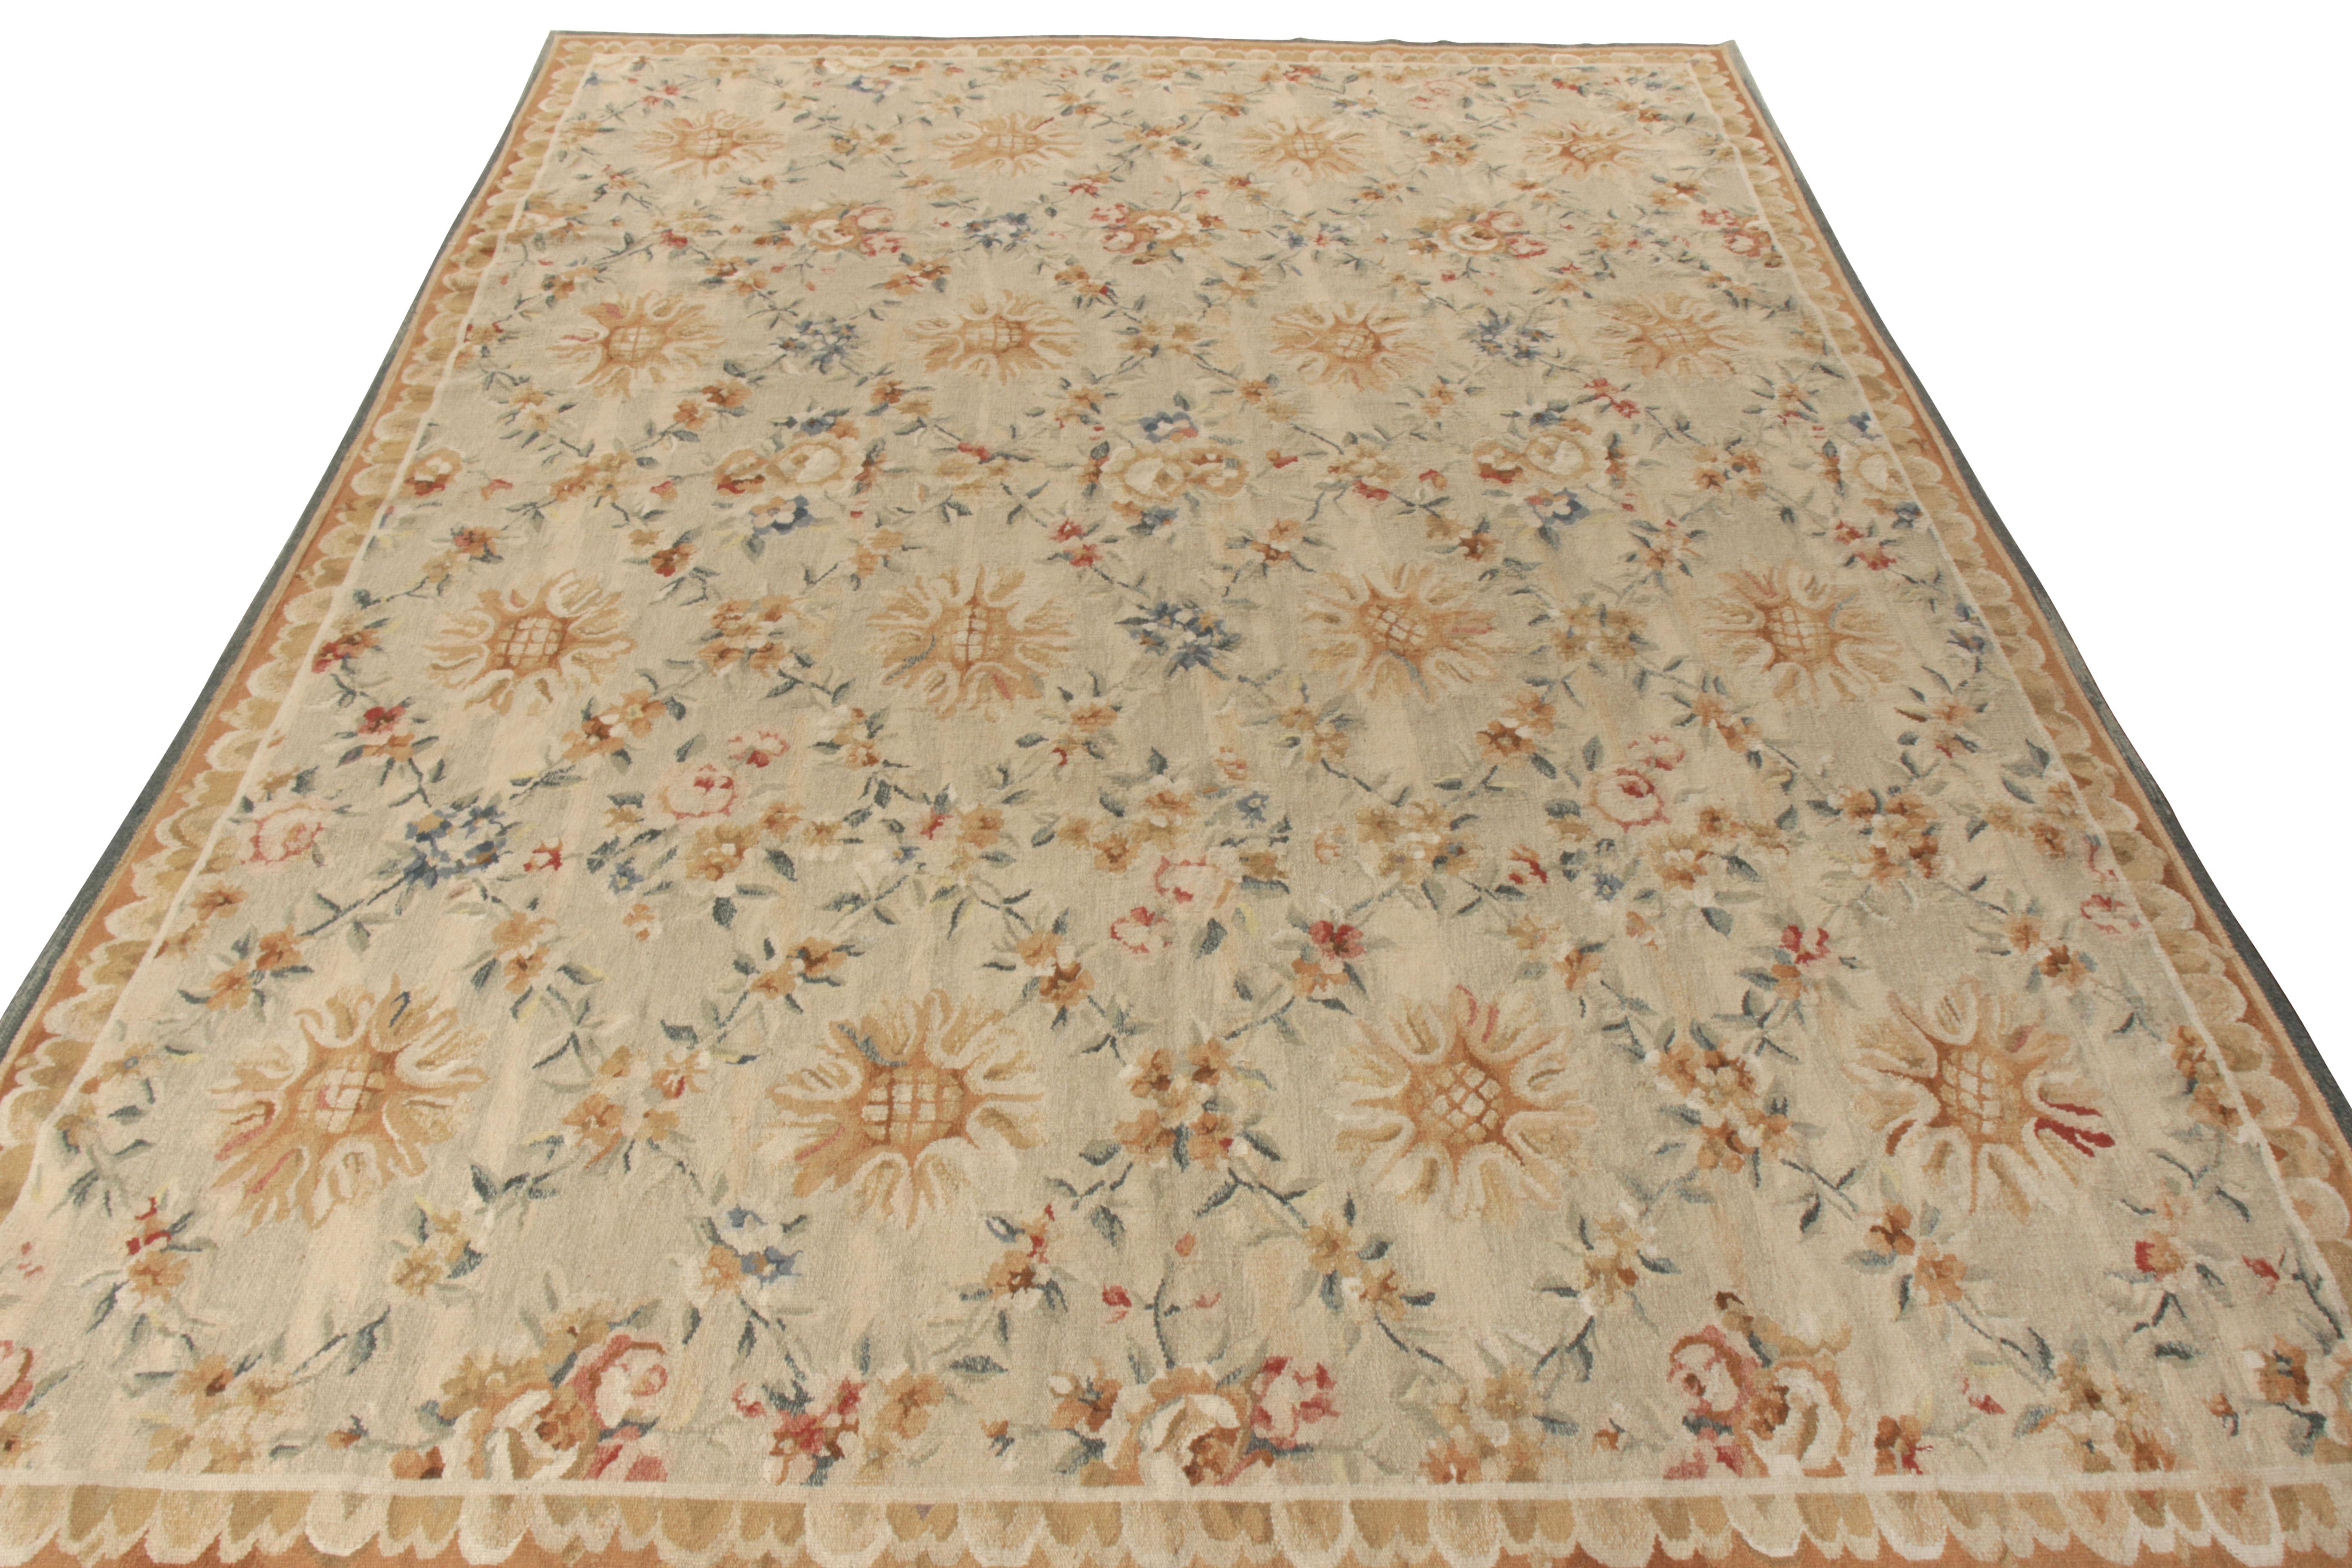 Rug & Kilim rend hommage au célèbre style français d'Aubusson à travers ce tapis à tissage plat 9x13 de sa collection européenne très convoitée. Tissé à la main en laine avec un fil de la plus haute qualité, cette pièce inspirée du 18ème siècle